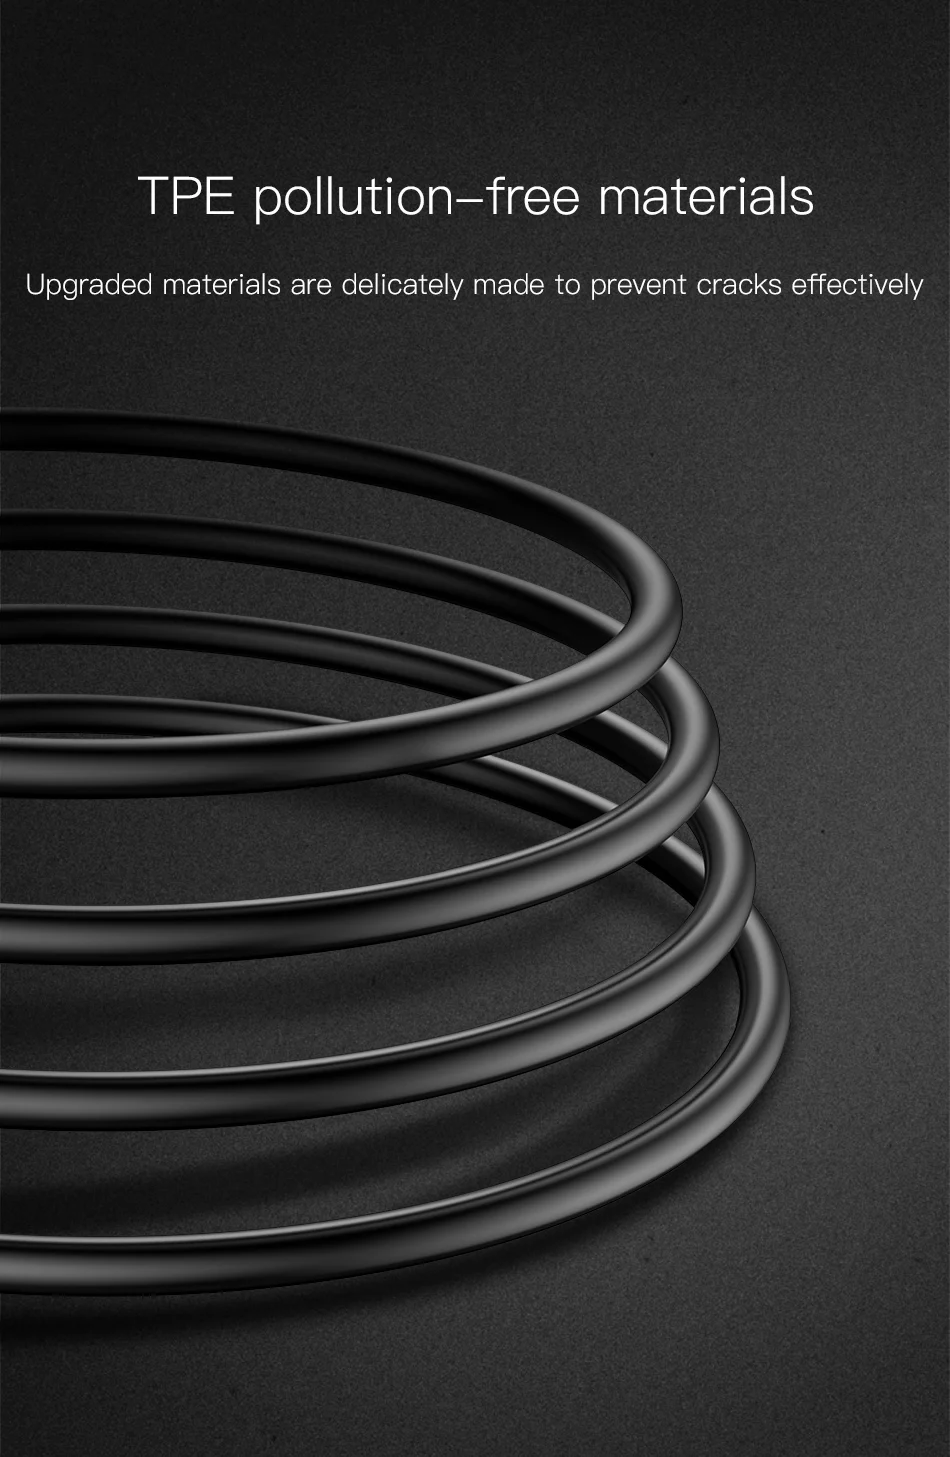 Usb-кабель Baseus с цифровым дисплеем для iPhone Xs Max Xr X 8 7 6 6s Plus 5 5S шнур для быстрой зарядки и передачи данных Магнитный кабель